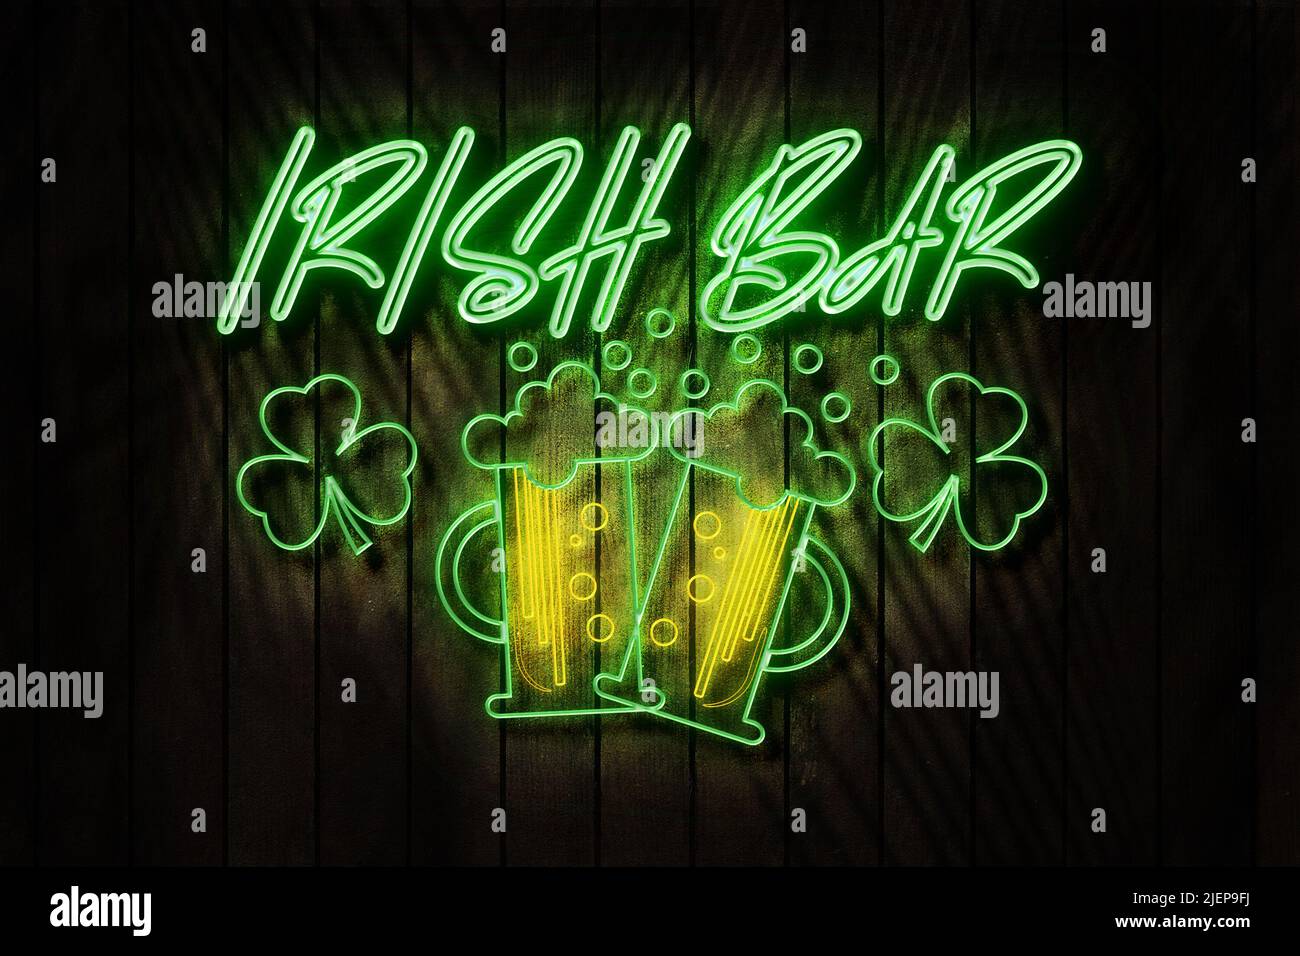 Cartel de neón de Irish Bar en una ilustración de Dark Wooden Wall 3D. Foto de stock